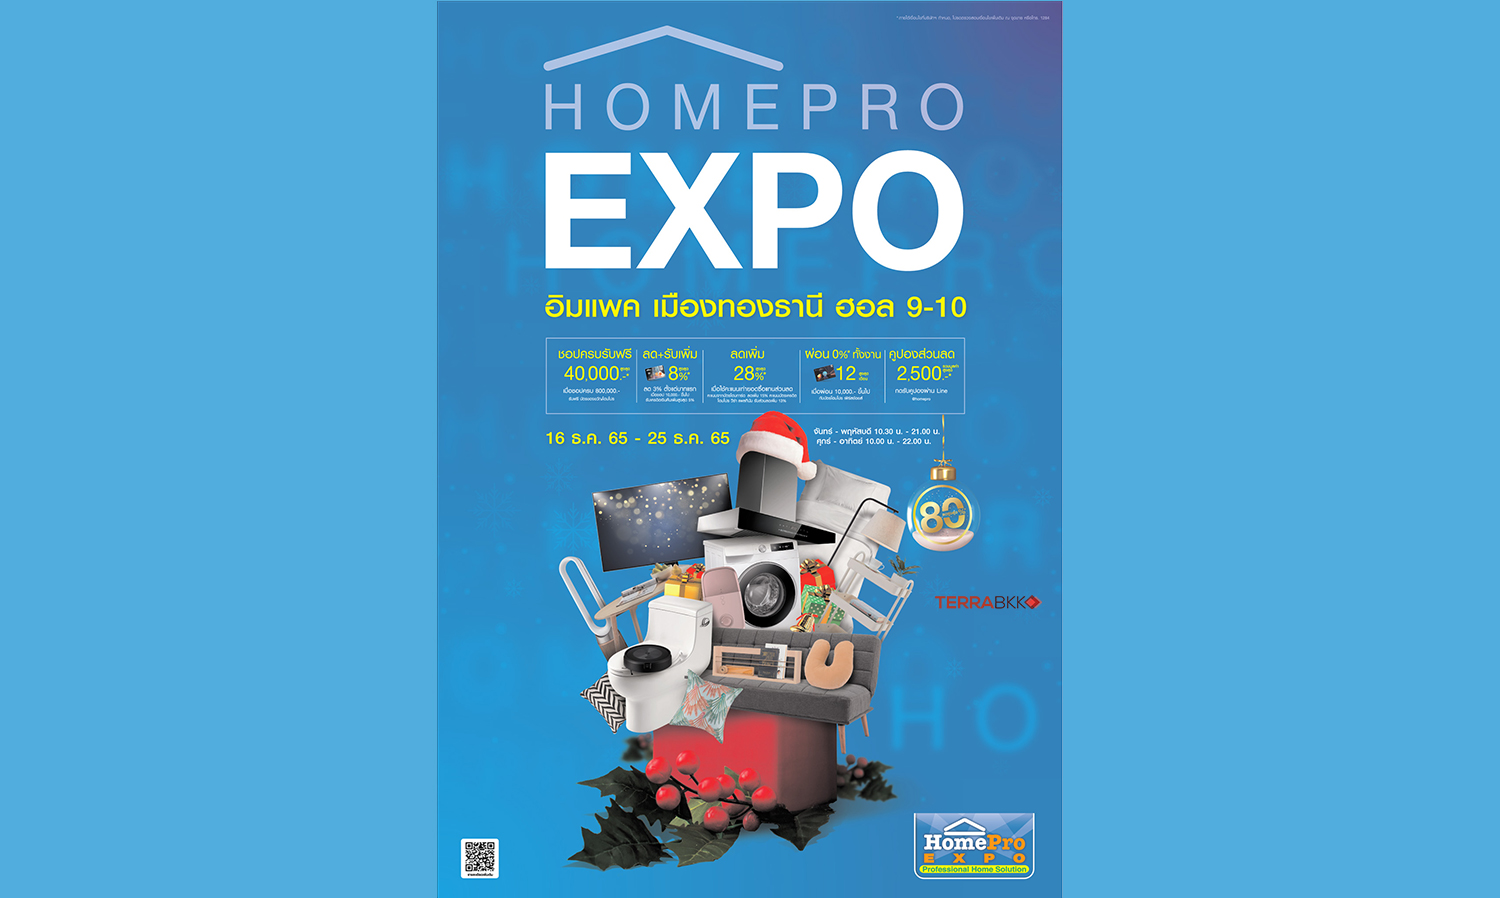 โฮมโปร…ส่งความสุข ส่งท้ายปี กับเทศกาลช้อปของขวัญ เพื่อคนรักบ้านตัวจริง..!! “HOMEPRO EXPO!!!” ลดสูงสุดถึง 80%!!! 10 วันเท่านั้น